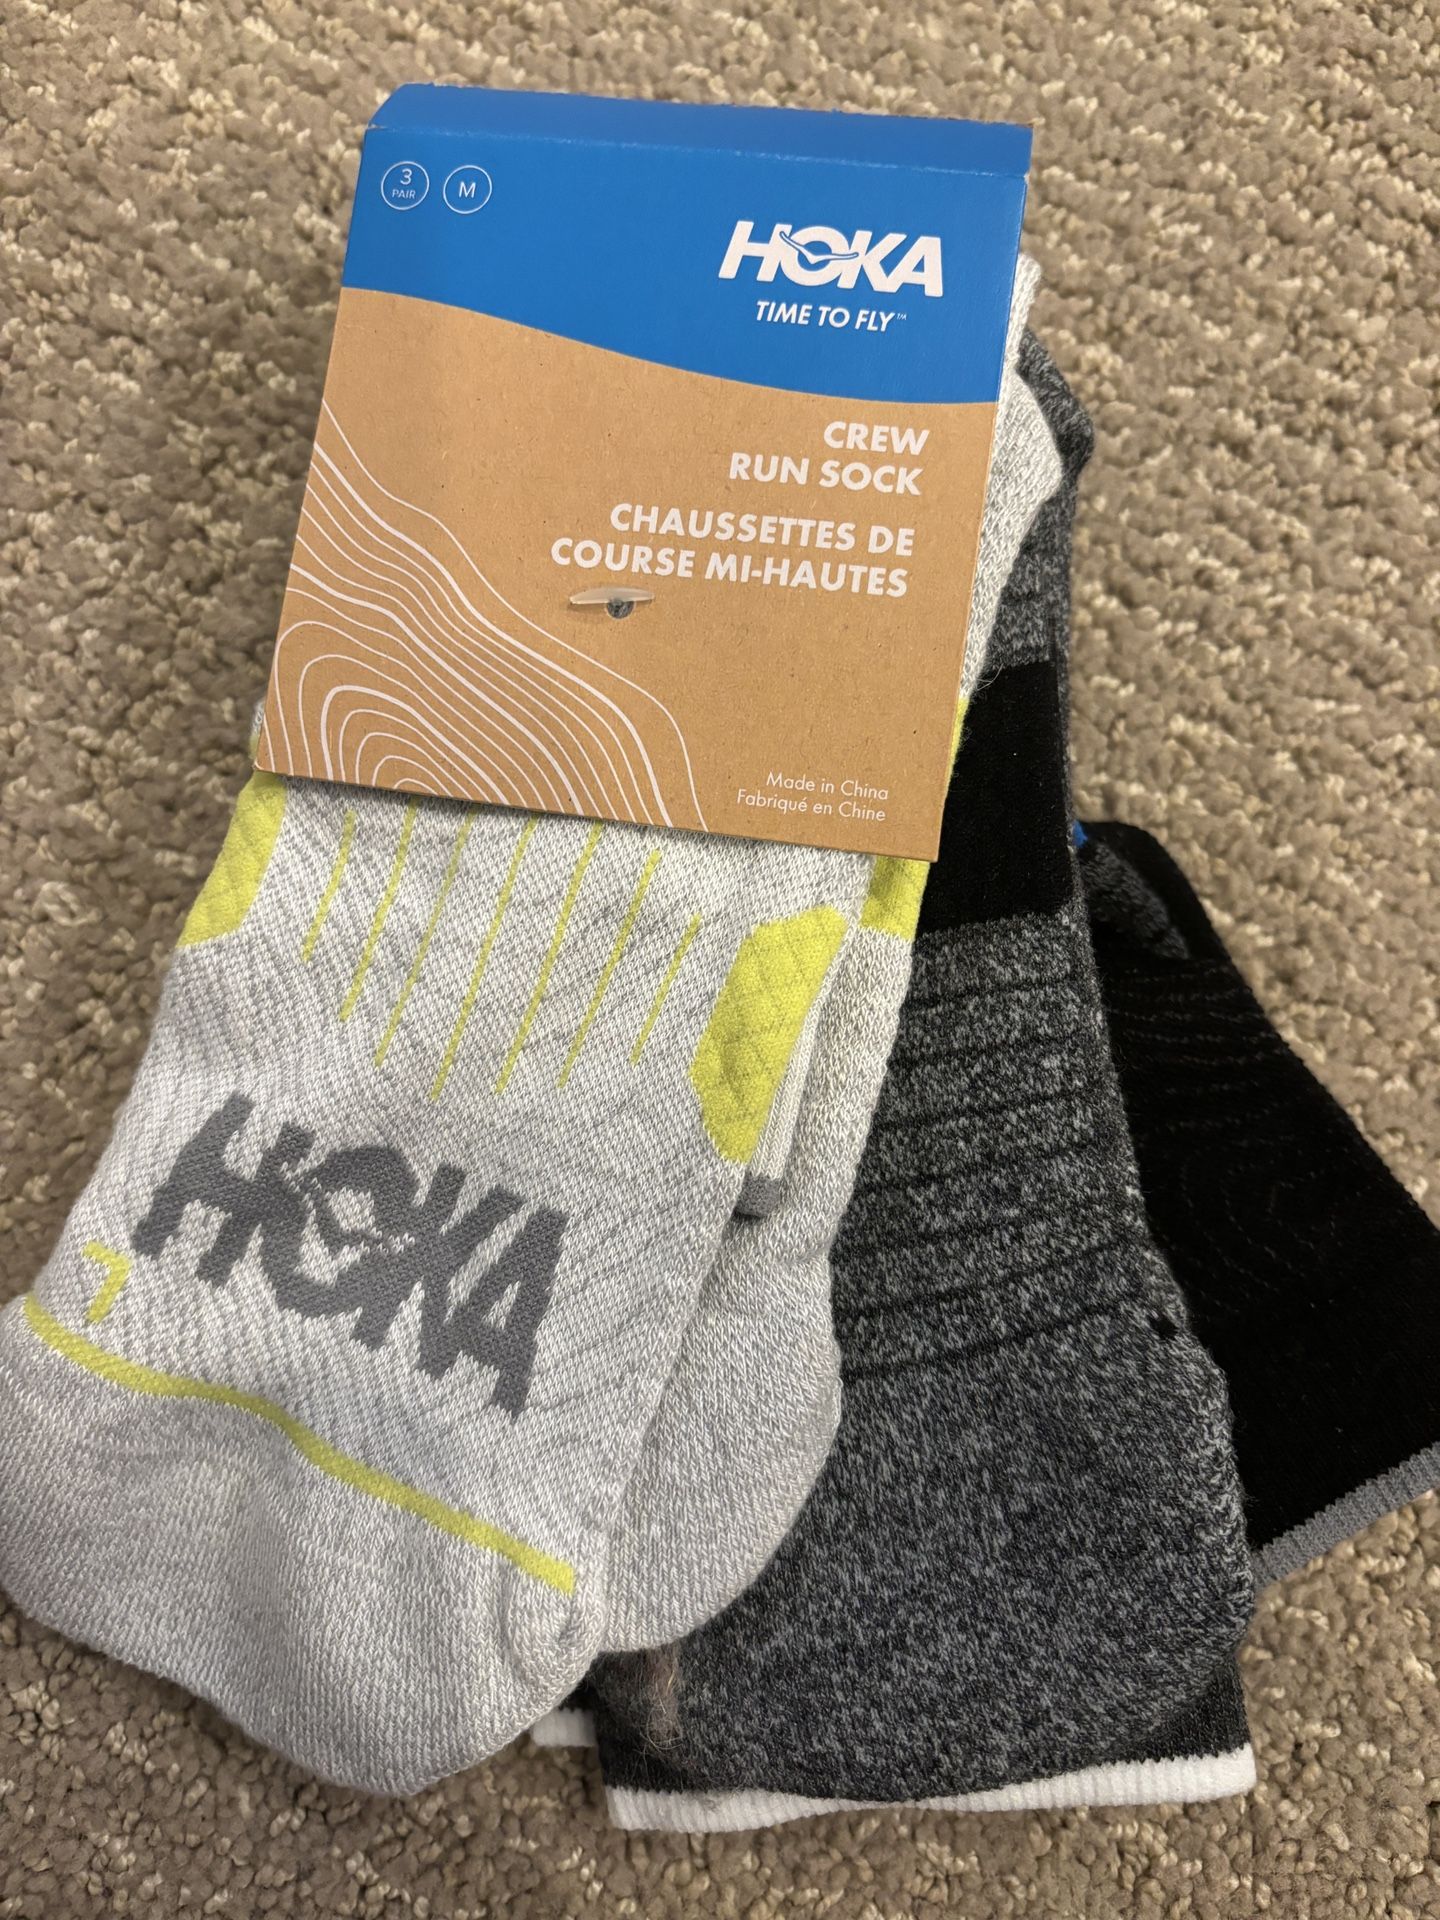 NEW Hoka Crew Run Sock 3-Pack Medium